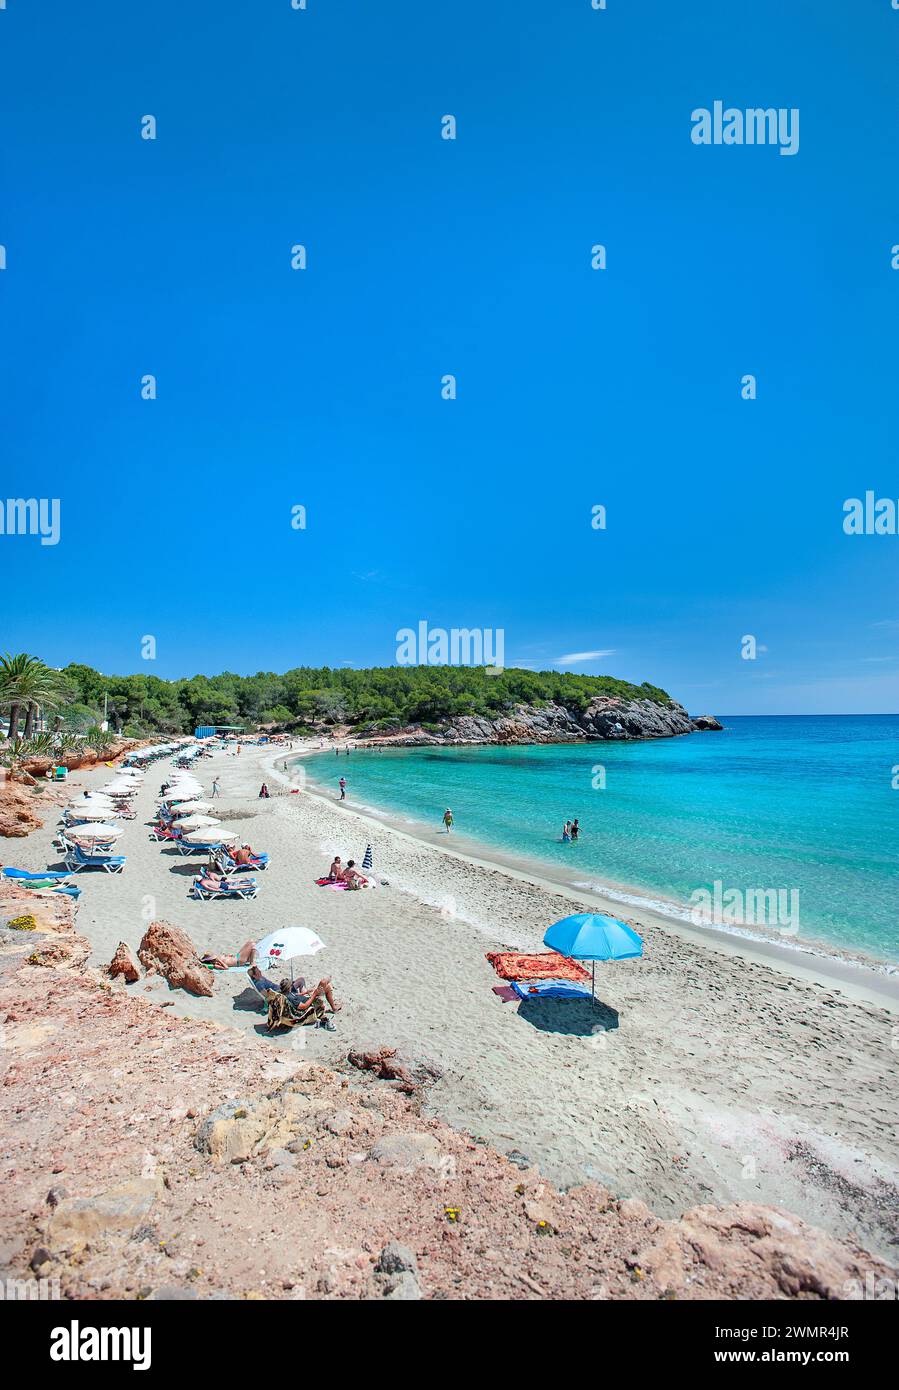 Cala Nova, Es Cana, Ibiza, Balearics, Spain Stock Photo